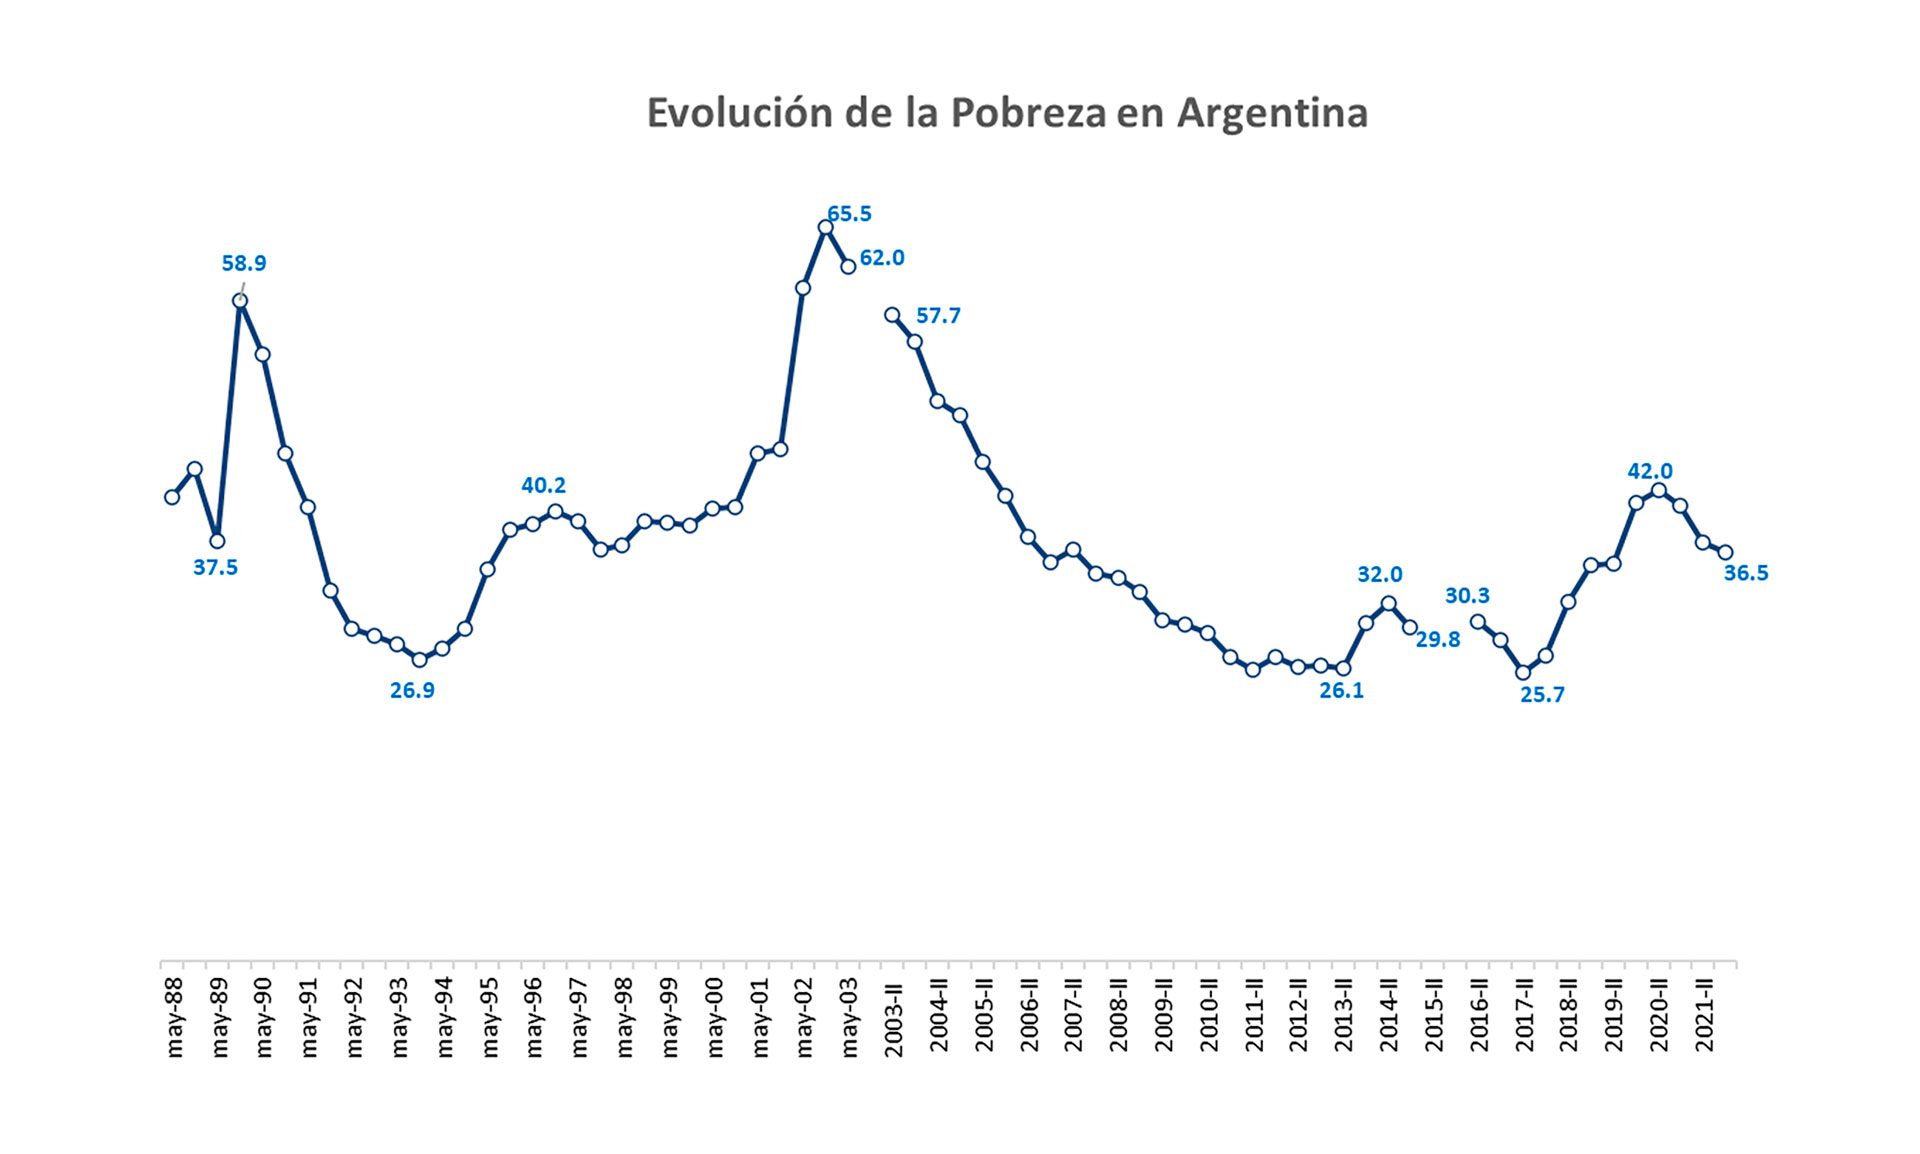 Evolución de la pobreza en la Argentina
Cedlas en base a datos oficiales y propios